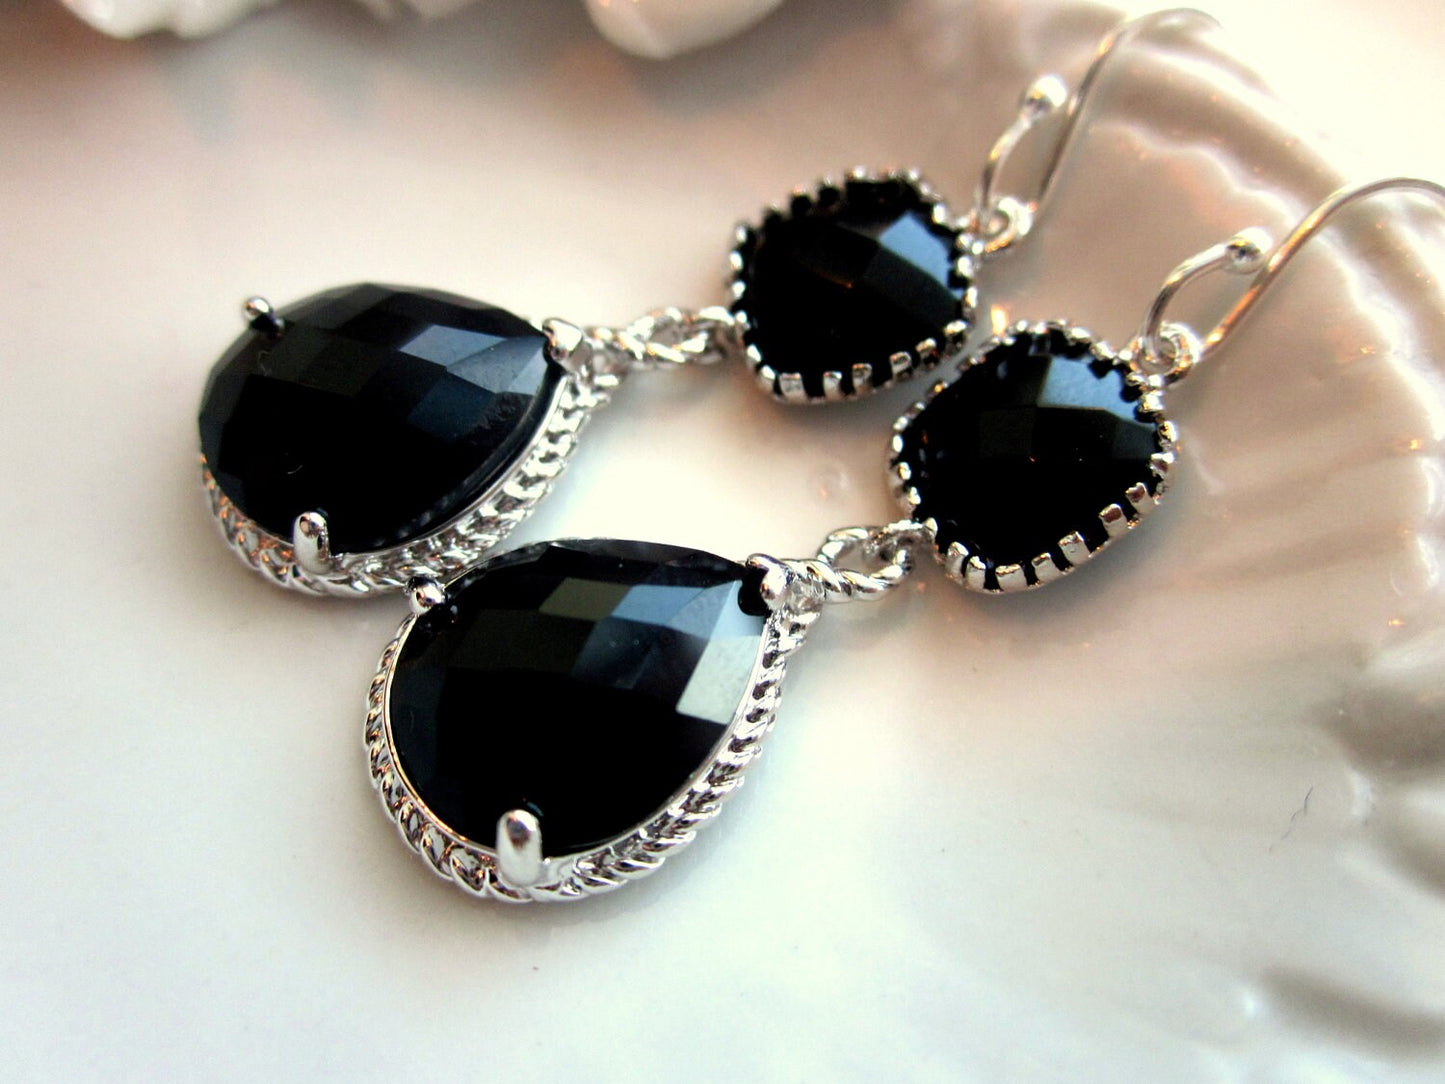 Black Earrings Onyx Silver Two Tier Earrings Teardrop Glass - Bridesmaid Earrings Wedding Earrings Bridal Earrings